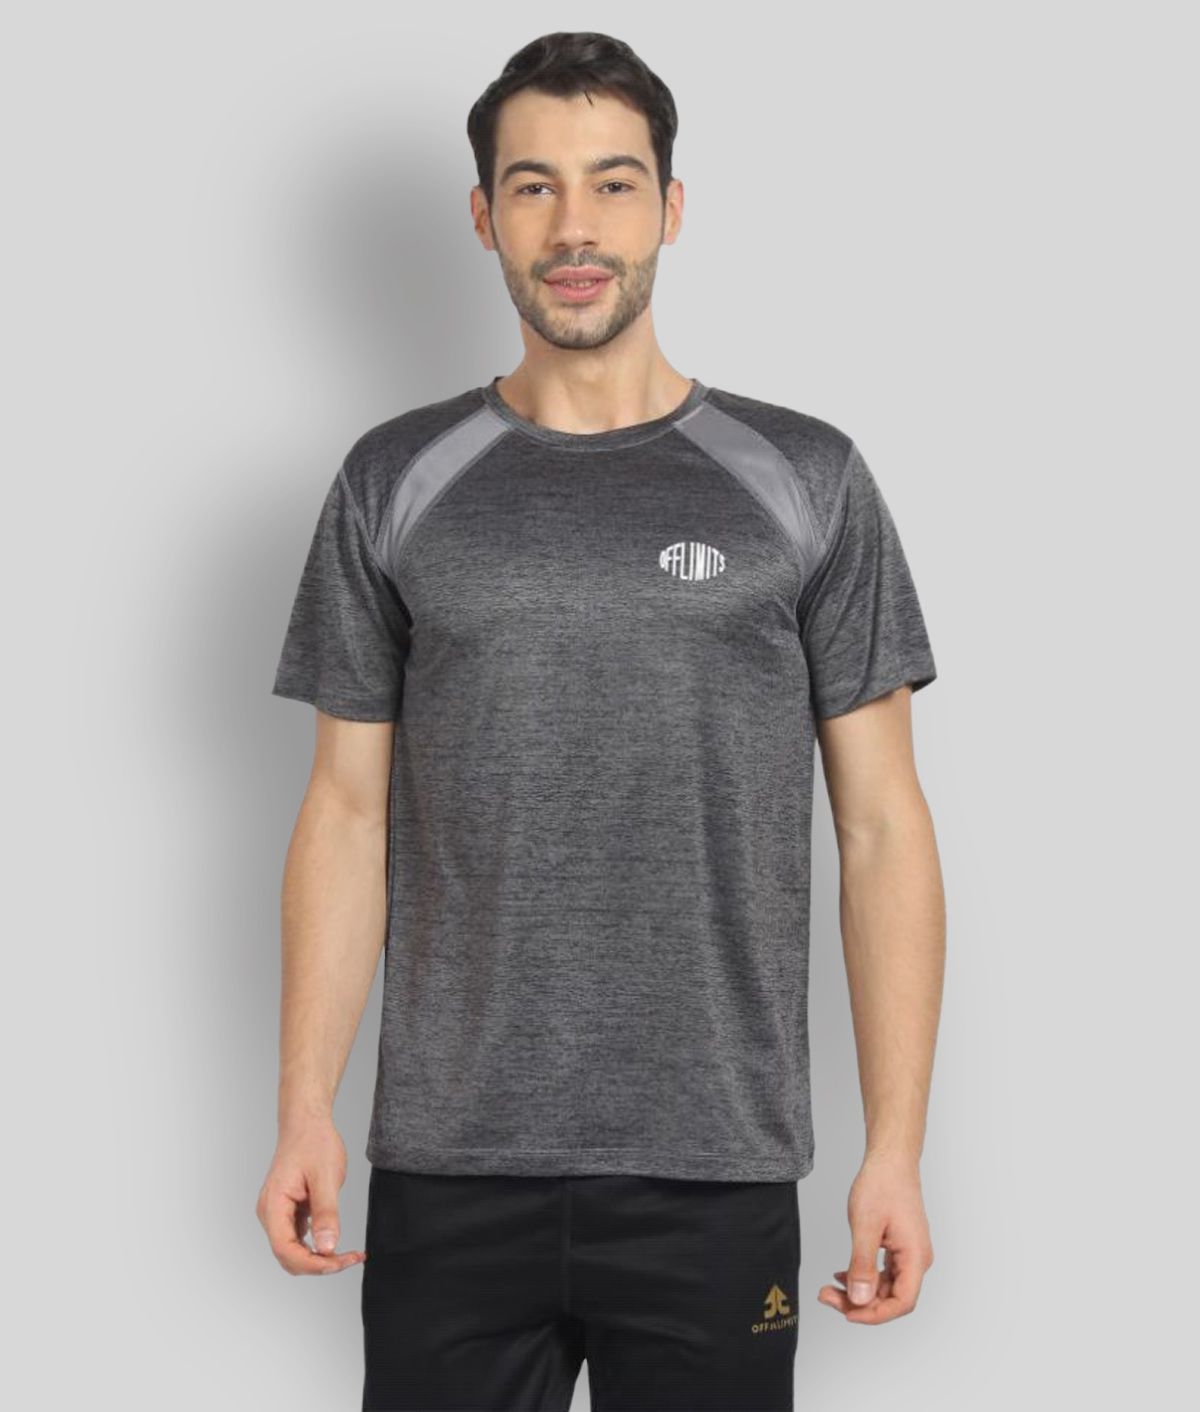     			OFF LIMITS - Grey Melange Polyester Regular Fit Men's Sports T-Shirt ( Pack of 1 )